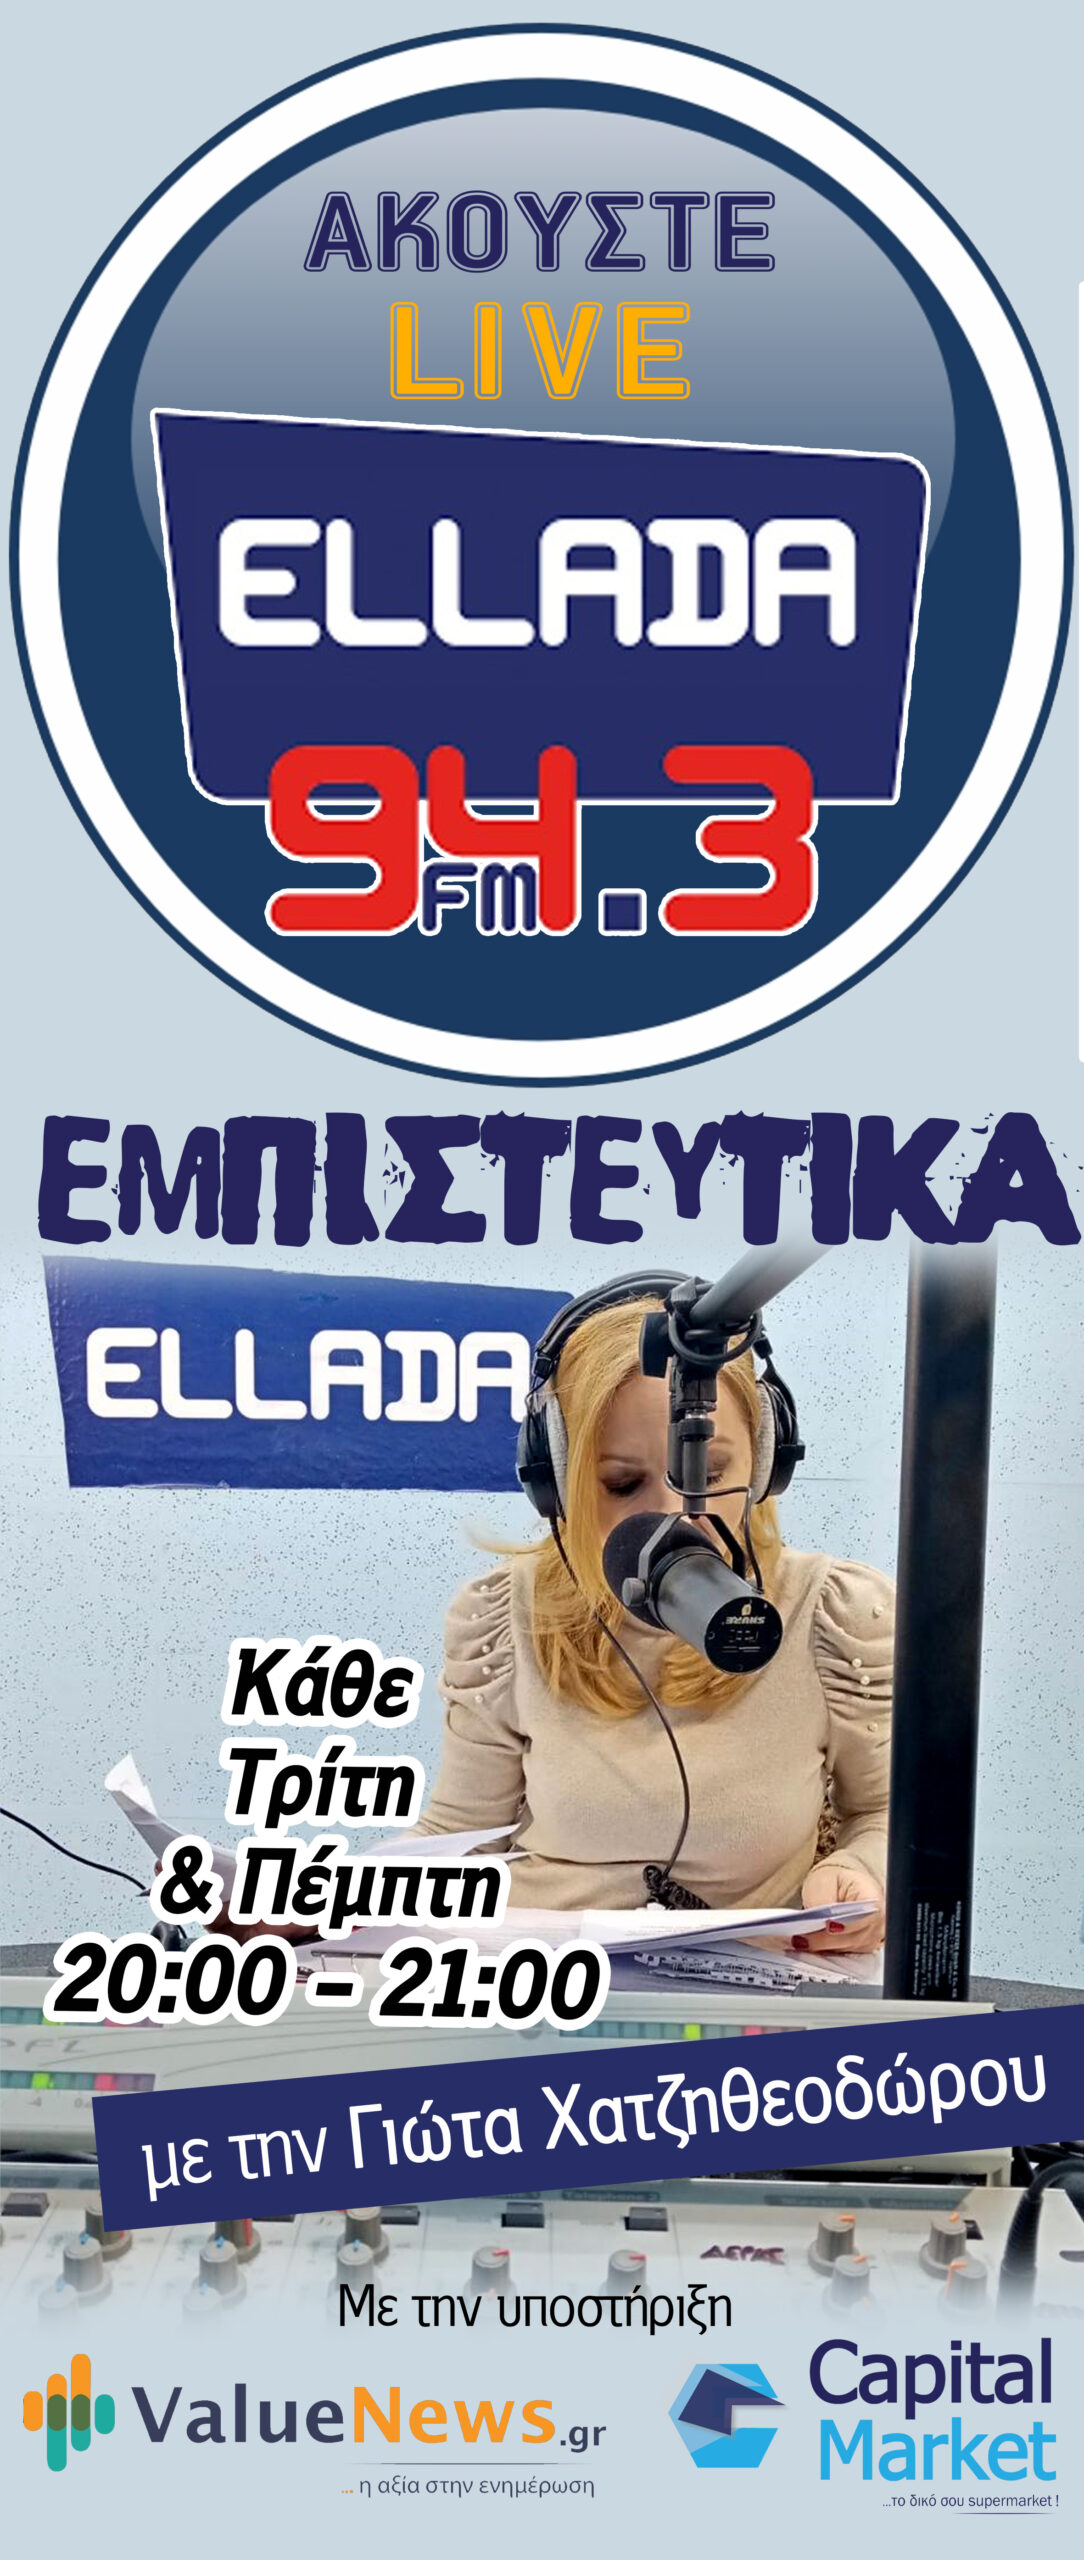 ELLADA-FM